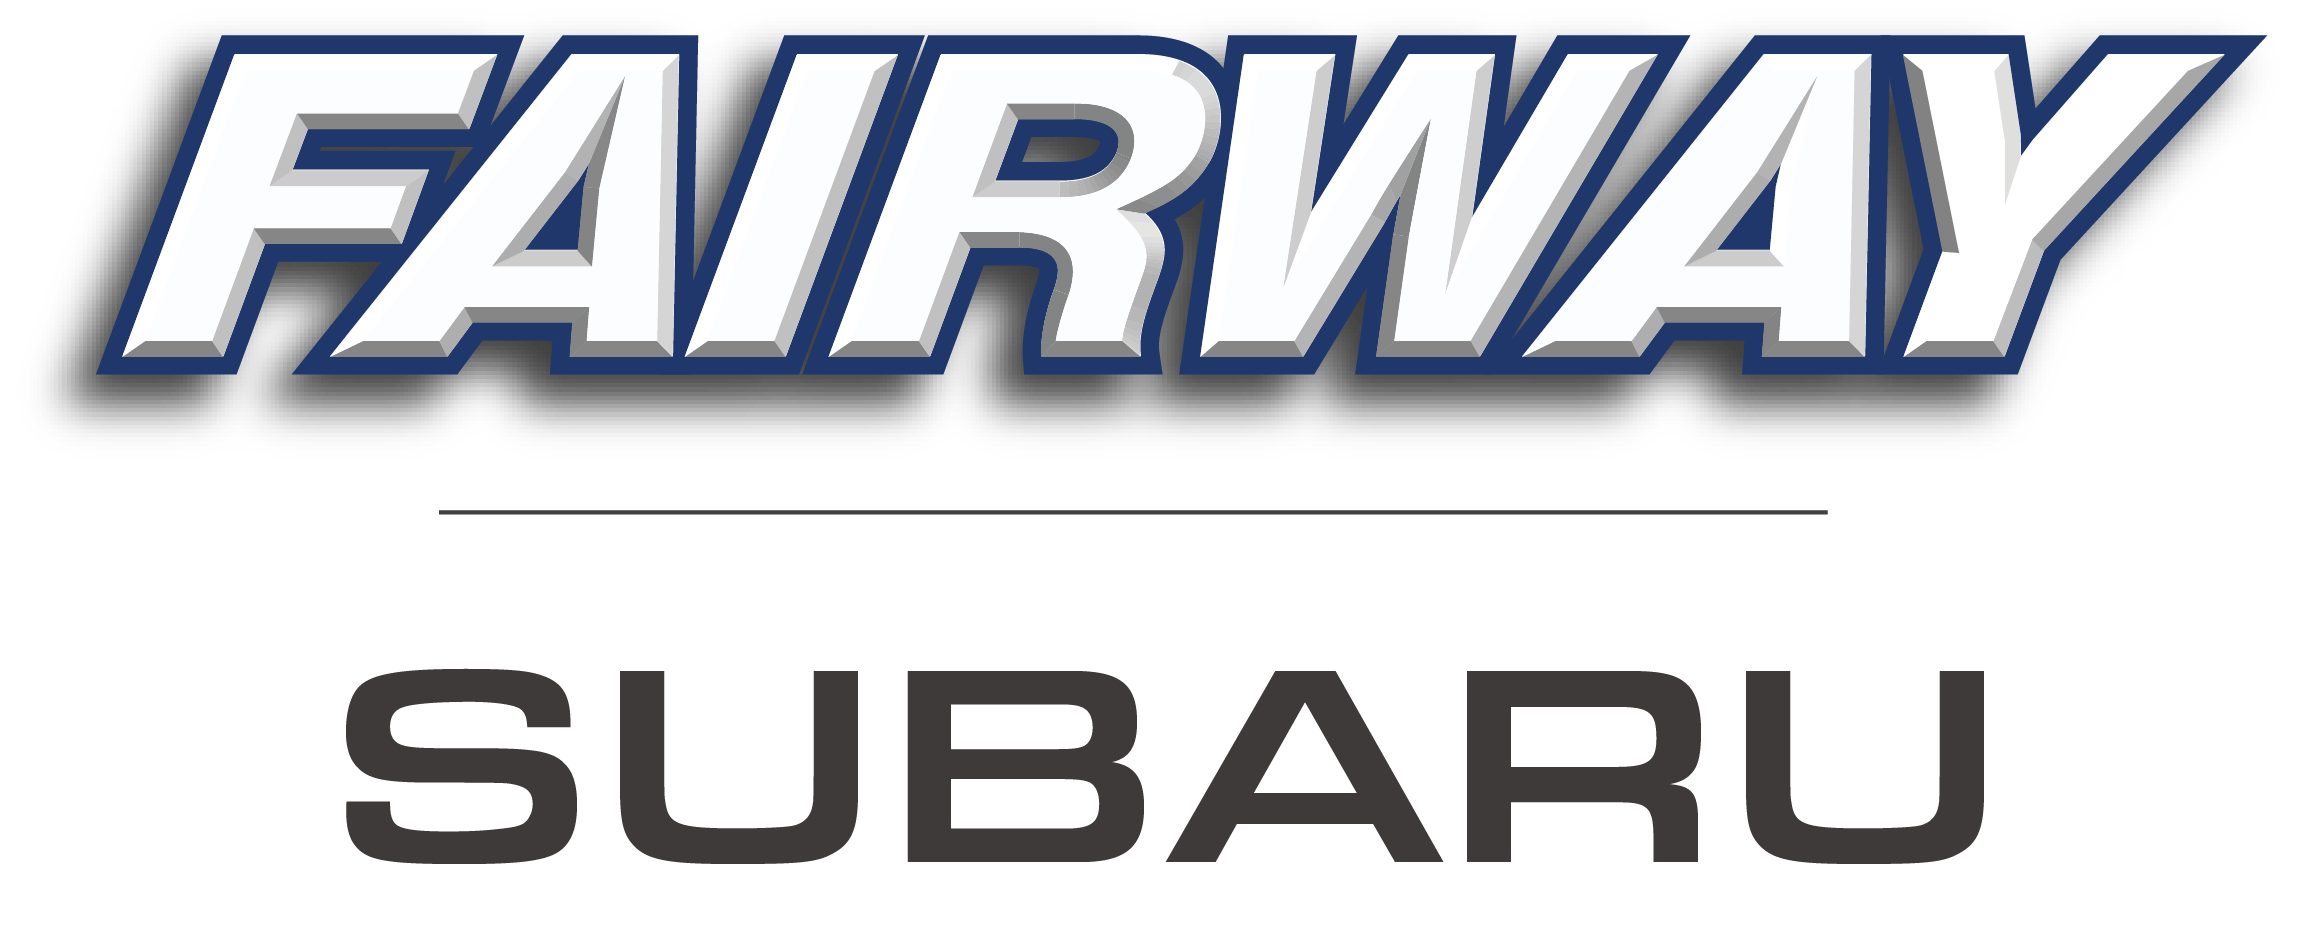 C. Fairway Subaru (Aluminum)